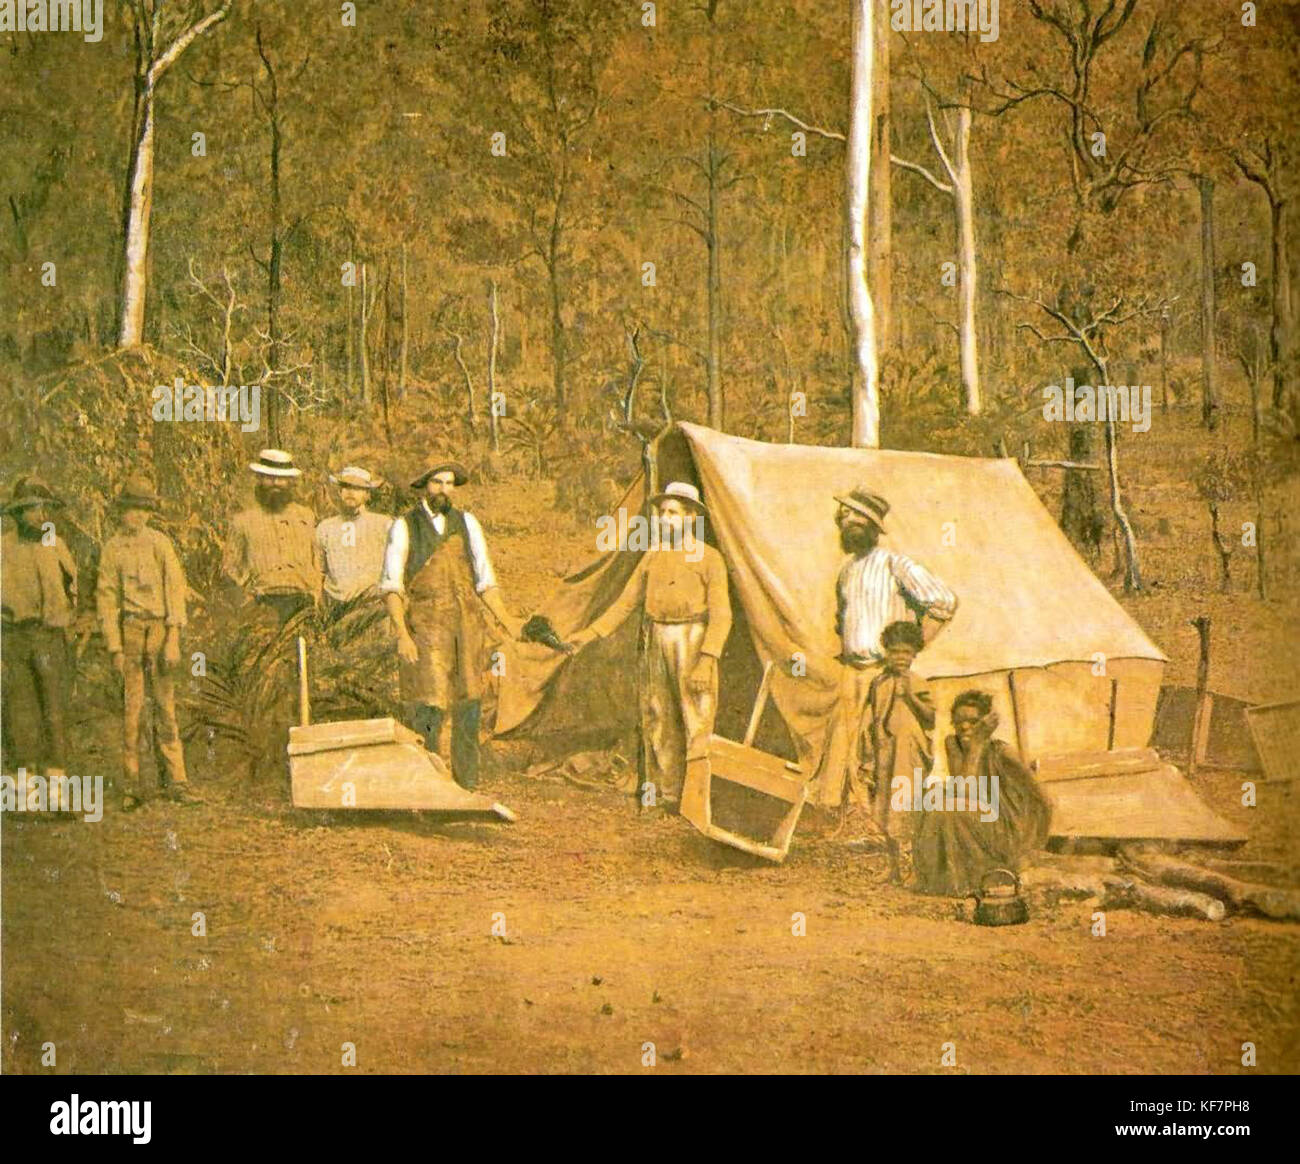 Потомок колонистов. Первые переселенцы в Австралии. Колонисты в Австралии. Поселенцы в Австралии. Колонизация Австралии европейцами.